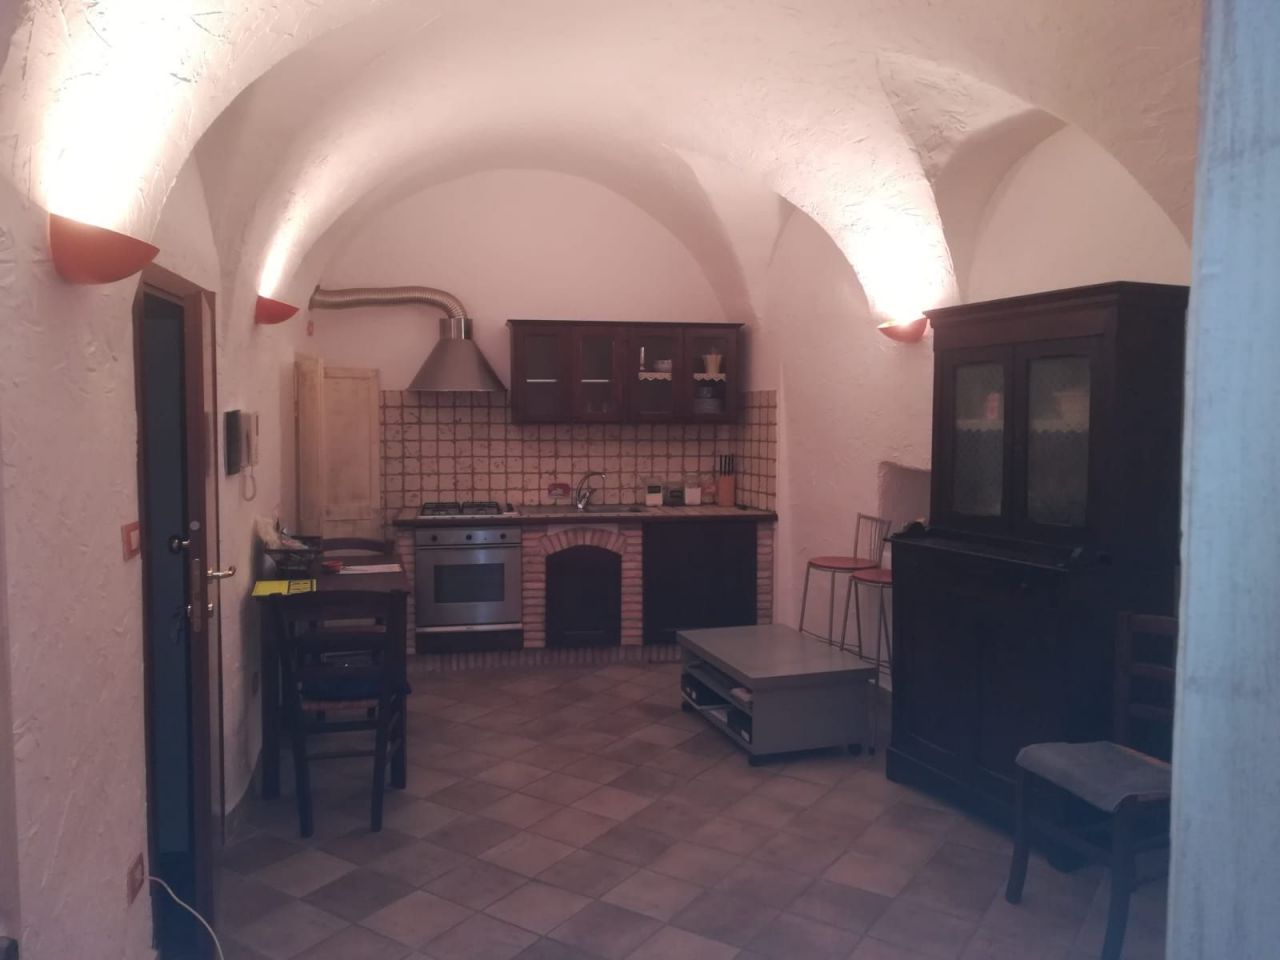 Квартира в Бордигере, Италия, 50 м2 - фото 1